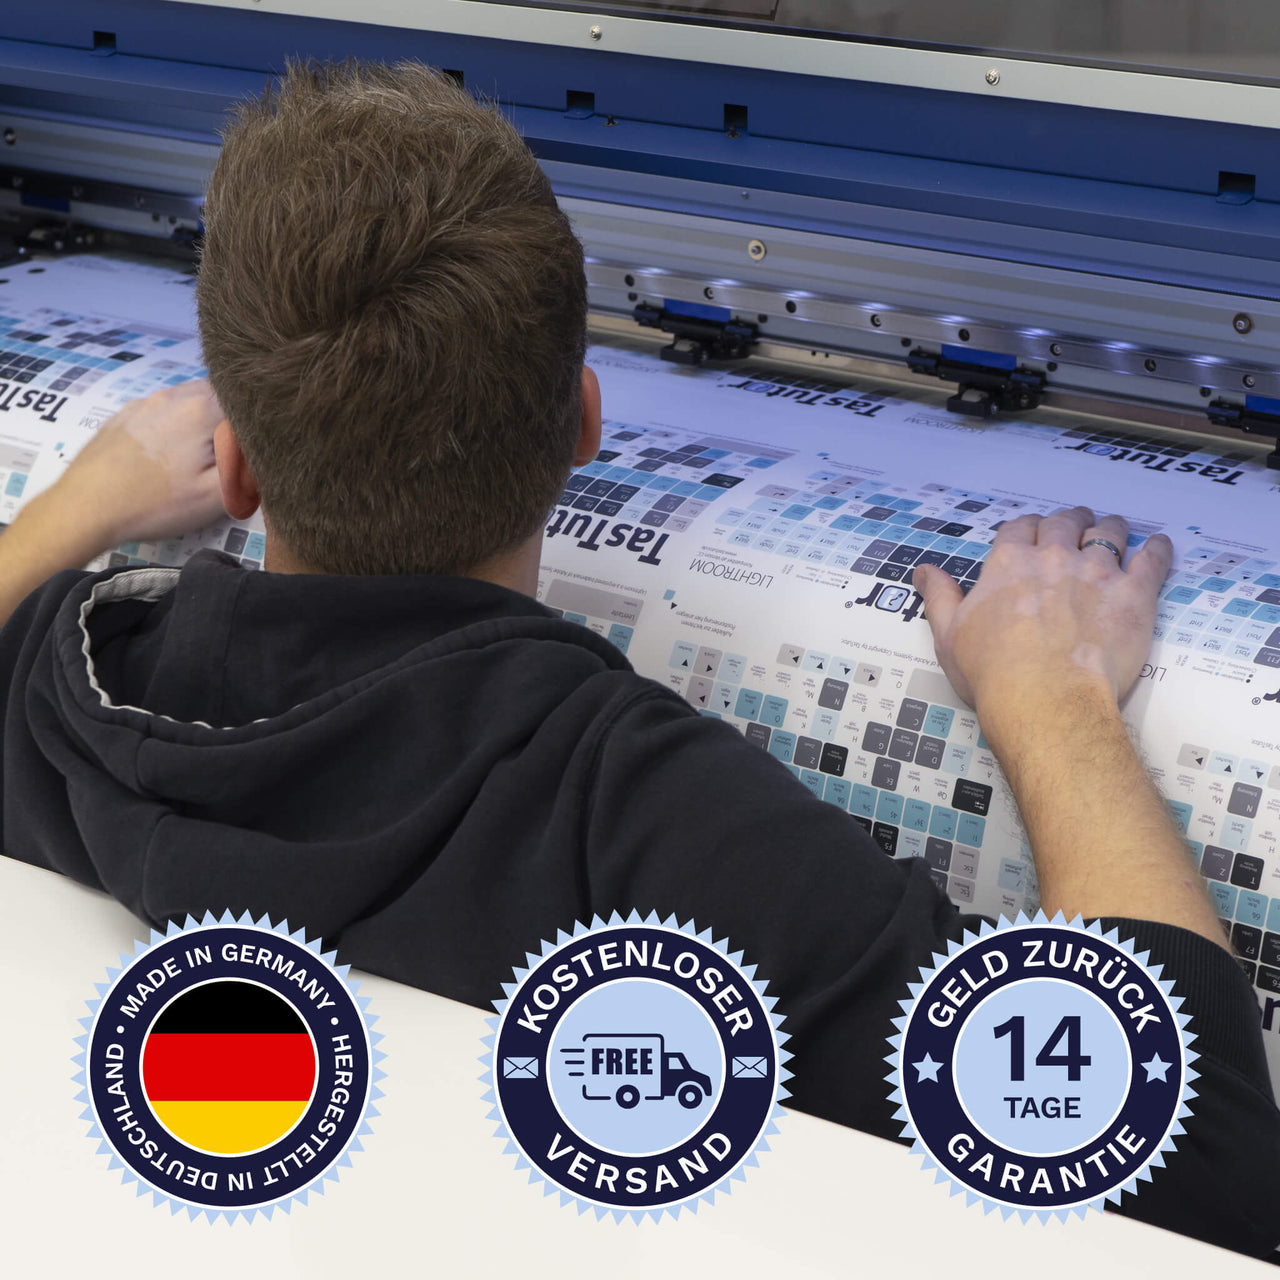 AutoCAD Tastaturaufkleber werden in Deutschland hergestellt. Der Versand ist kostenlos und wir gewährleisten 14 Tage Geld zurück Garantie | TasTutor